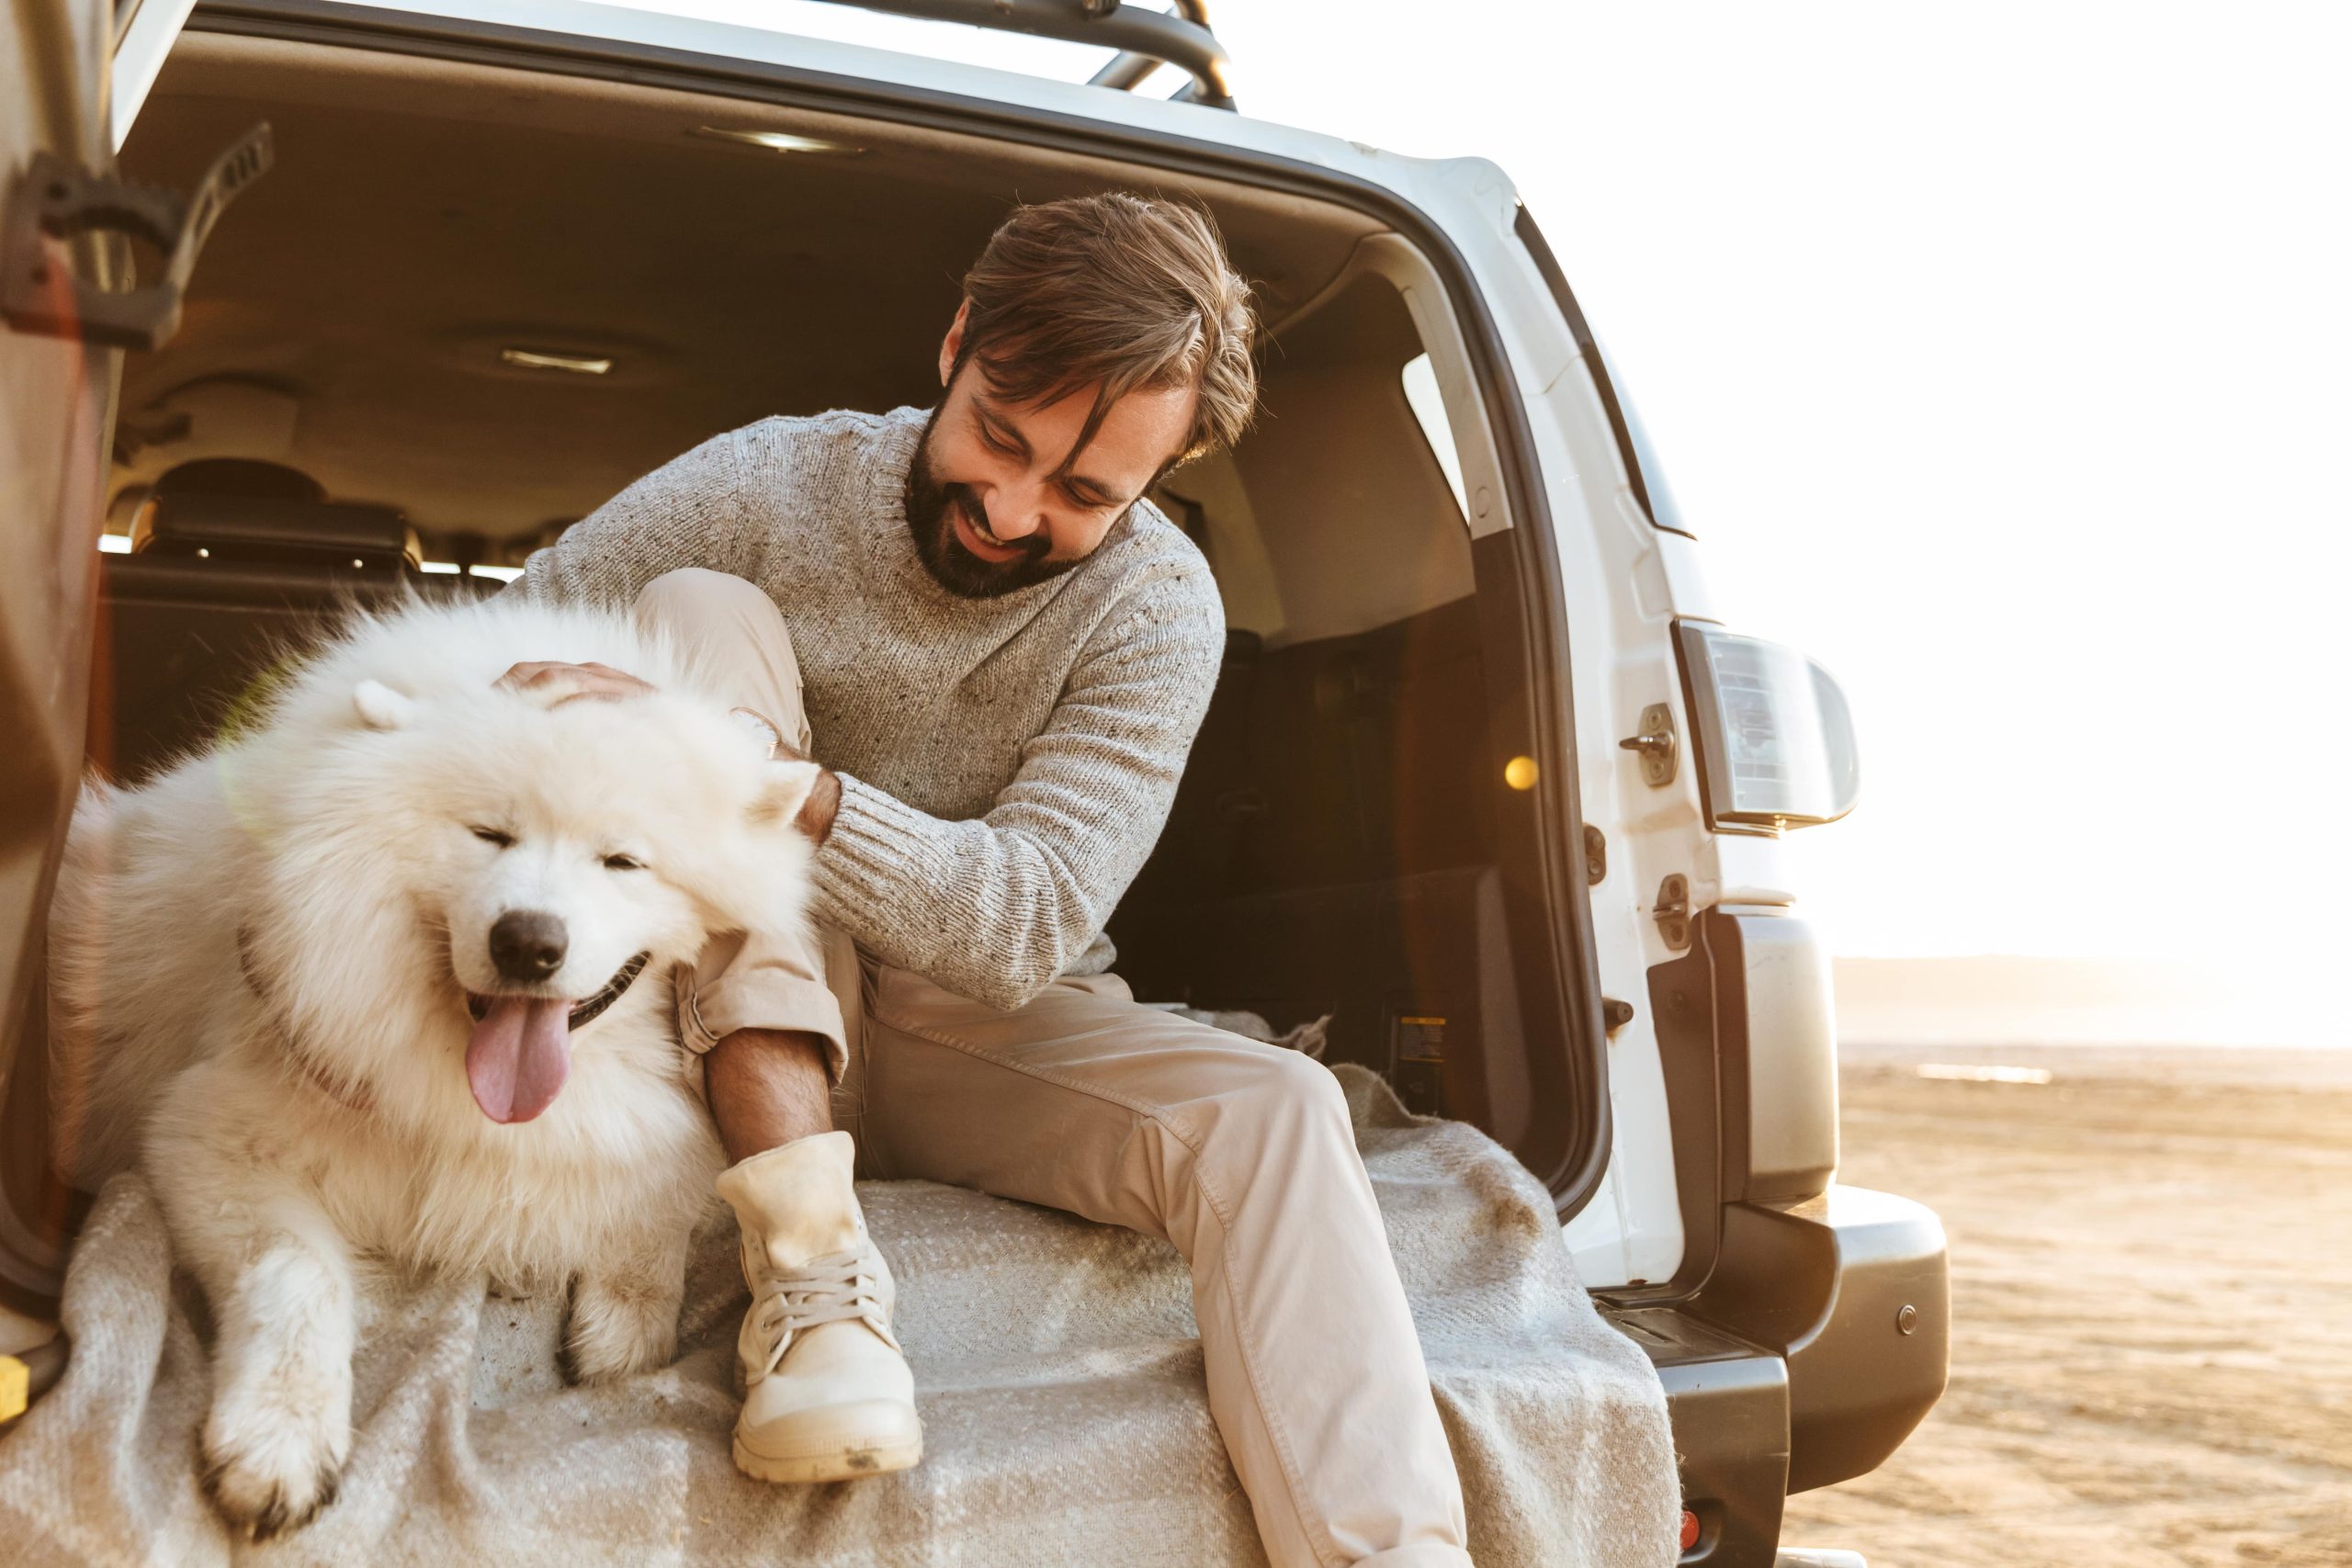 Ein junger Mann sitzt mit seinem weißen Hund im Kofferraum eines Autos. Er sieht glücklich aus und streichelt seinen Hund.